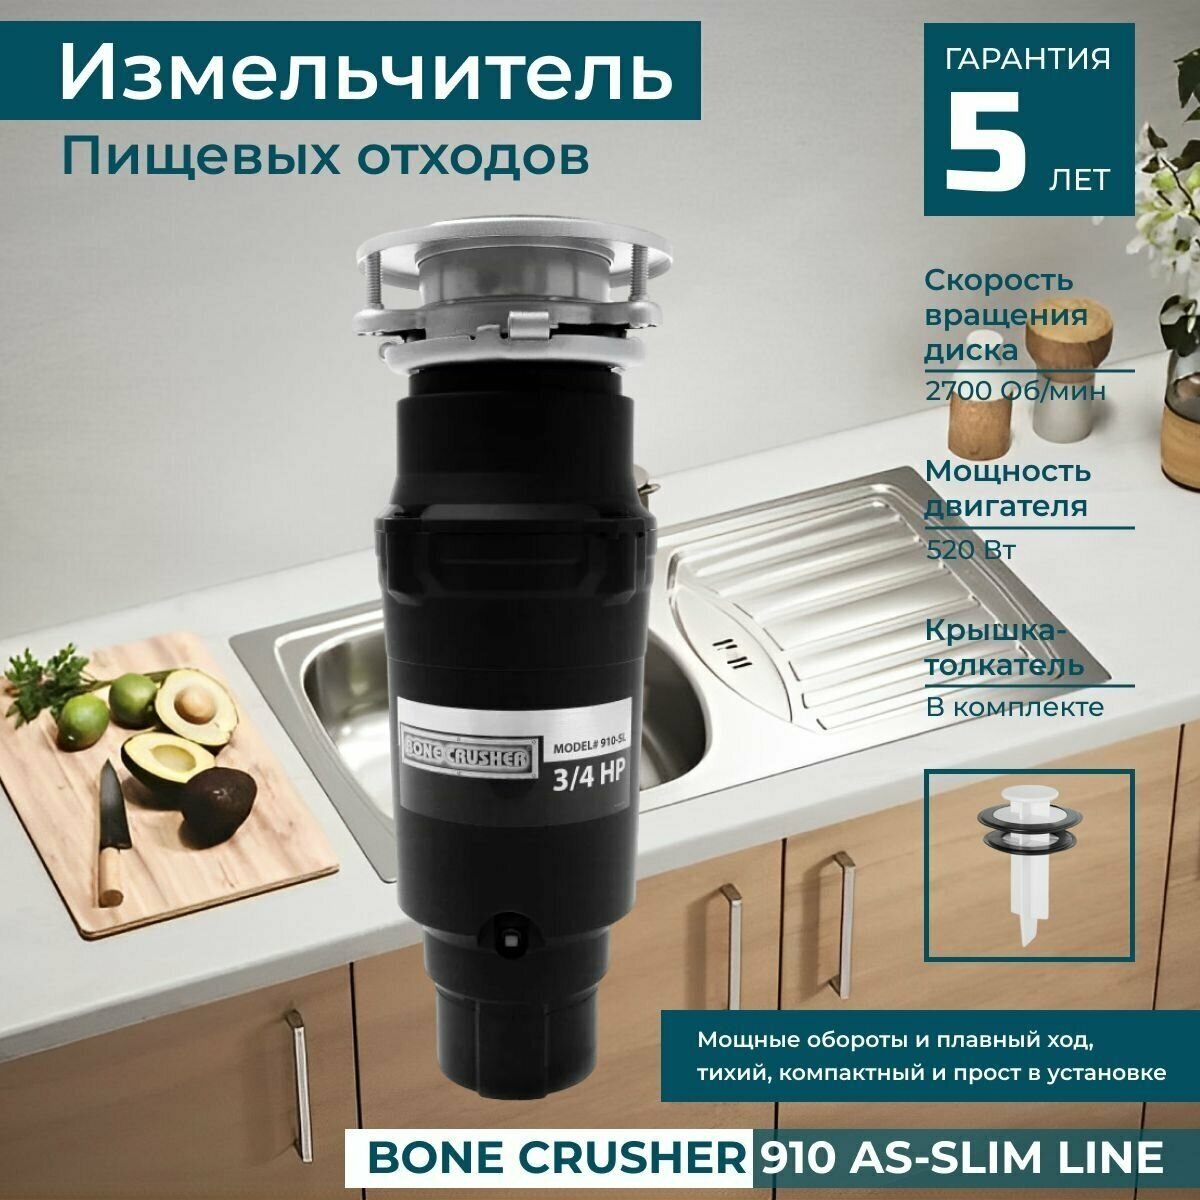 Измельчитель кухонный электрический пищевых отходов бытовой в мойку (диспоузер) Bone Crusher 910 AS-Slim line